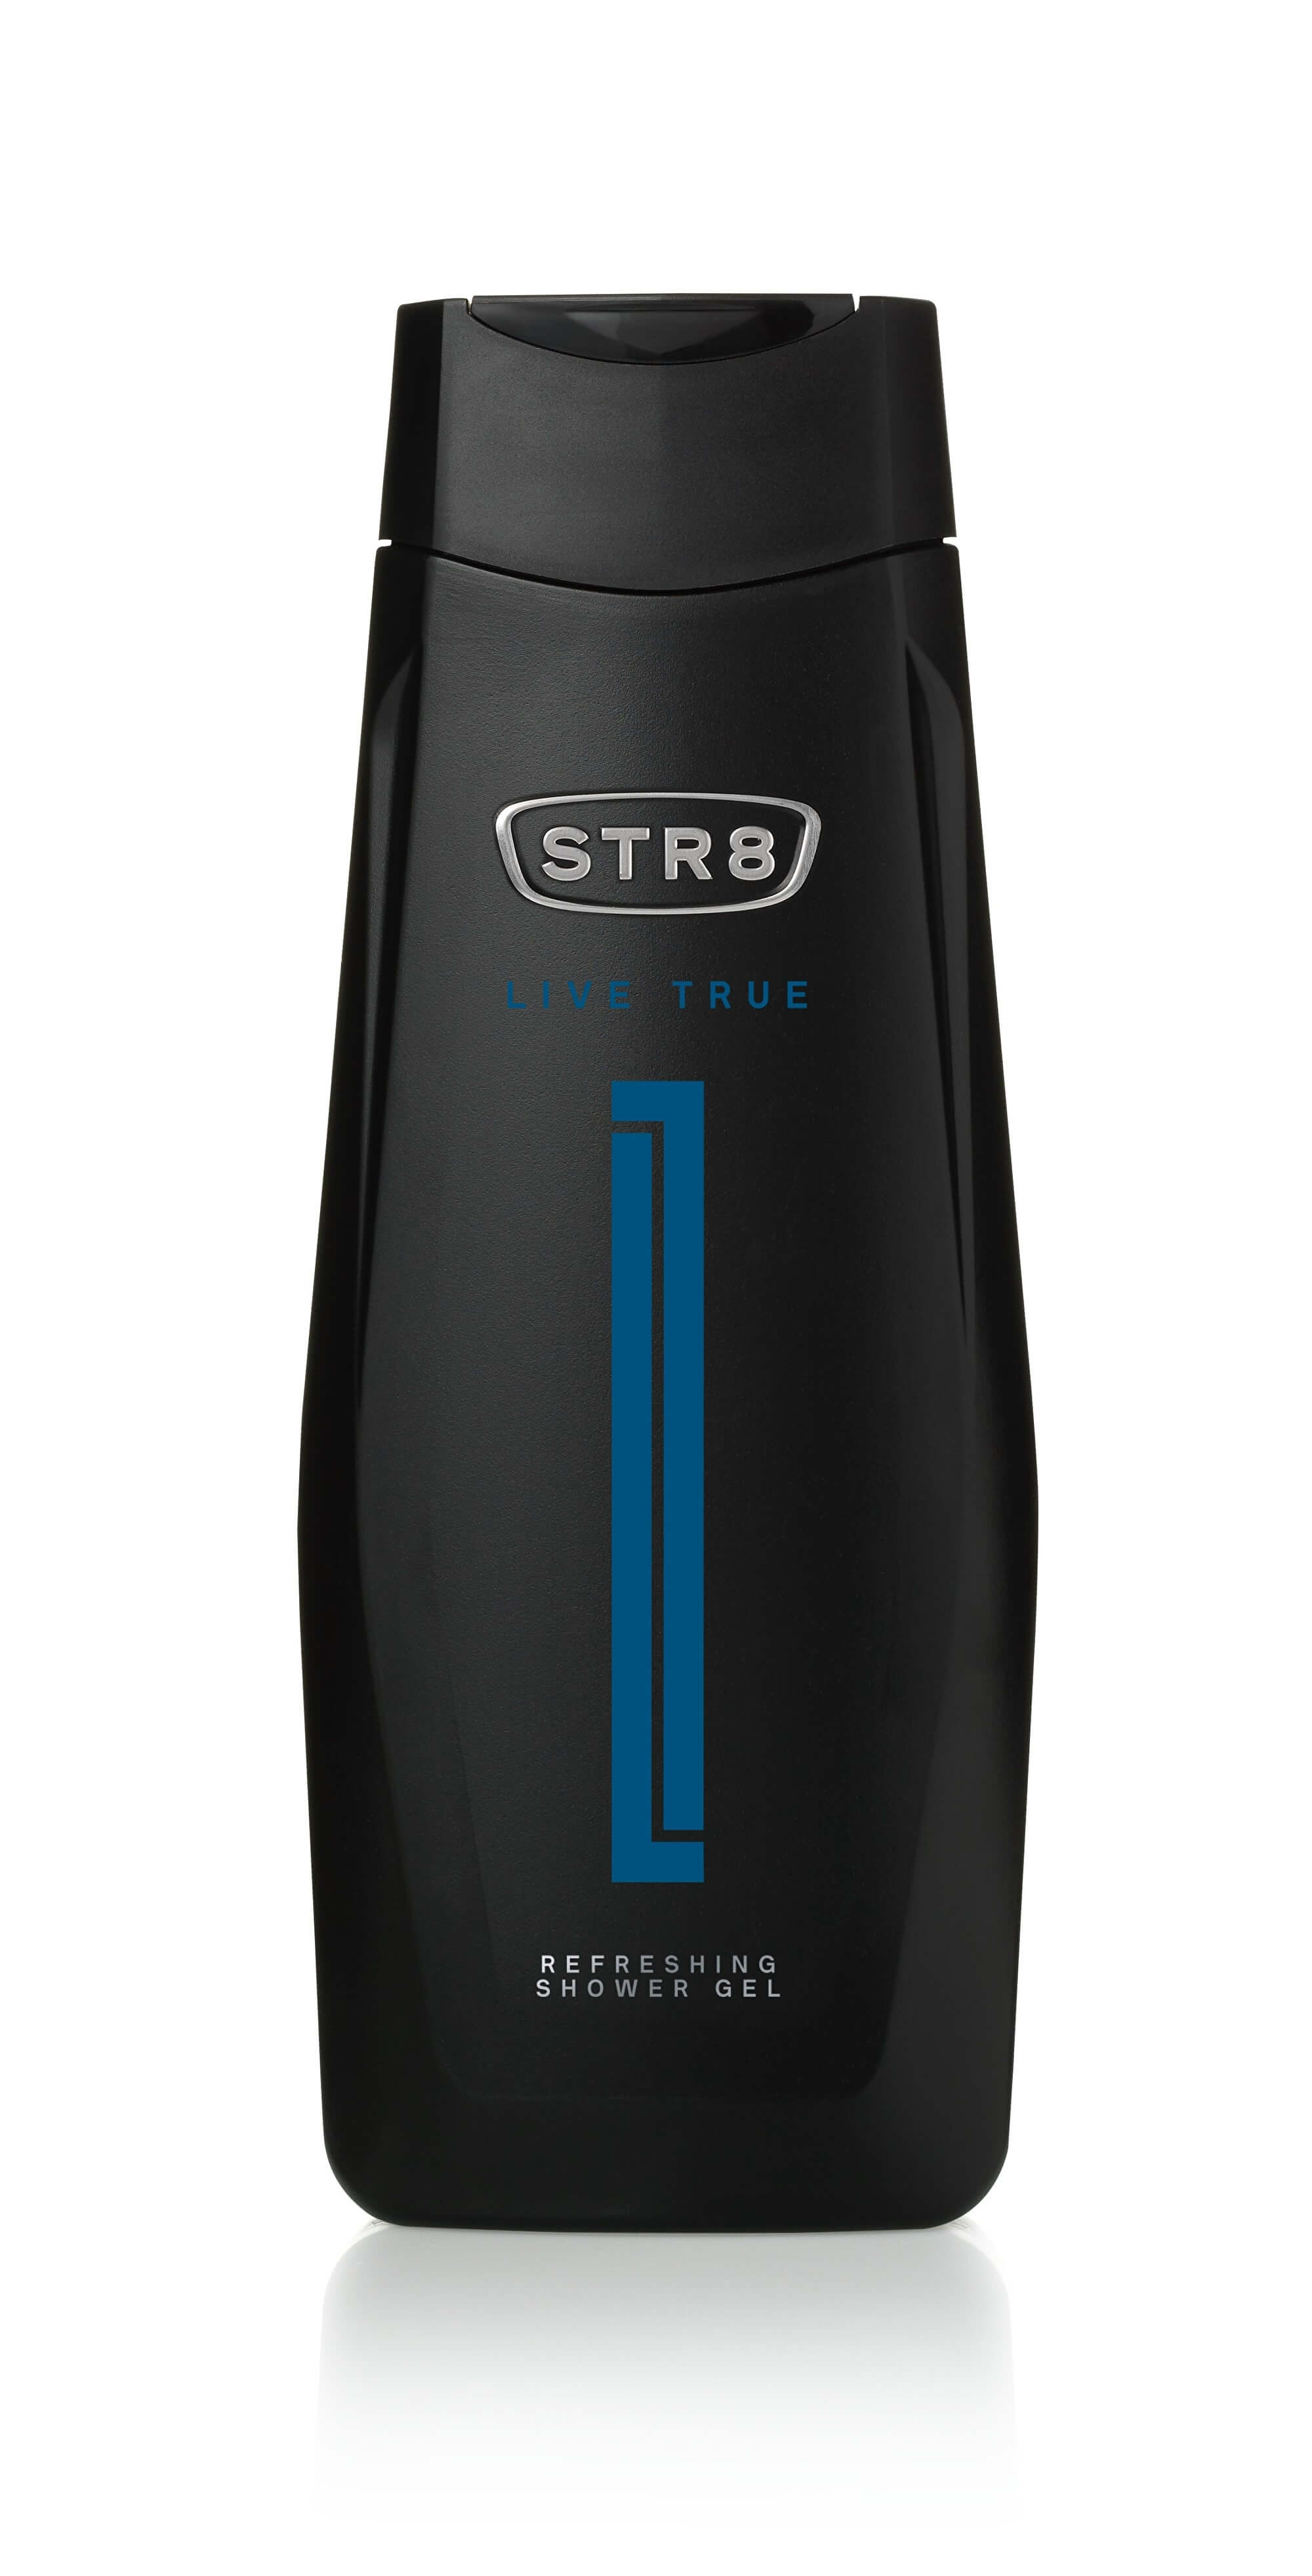 STR8 Live True - sprchový gel 250 ml + 2 mesiace na vrátenie tovaru